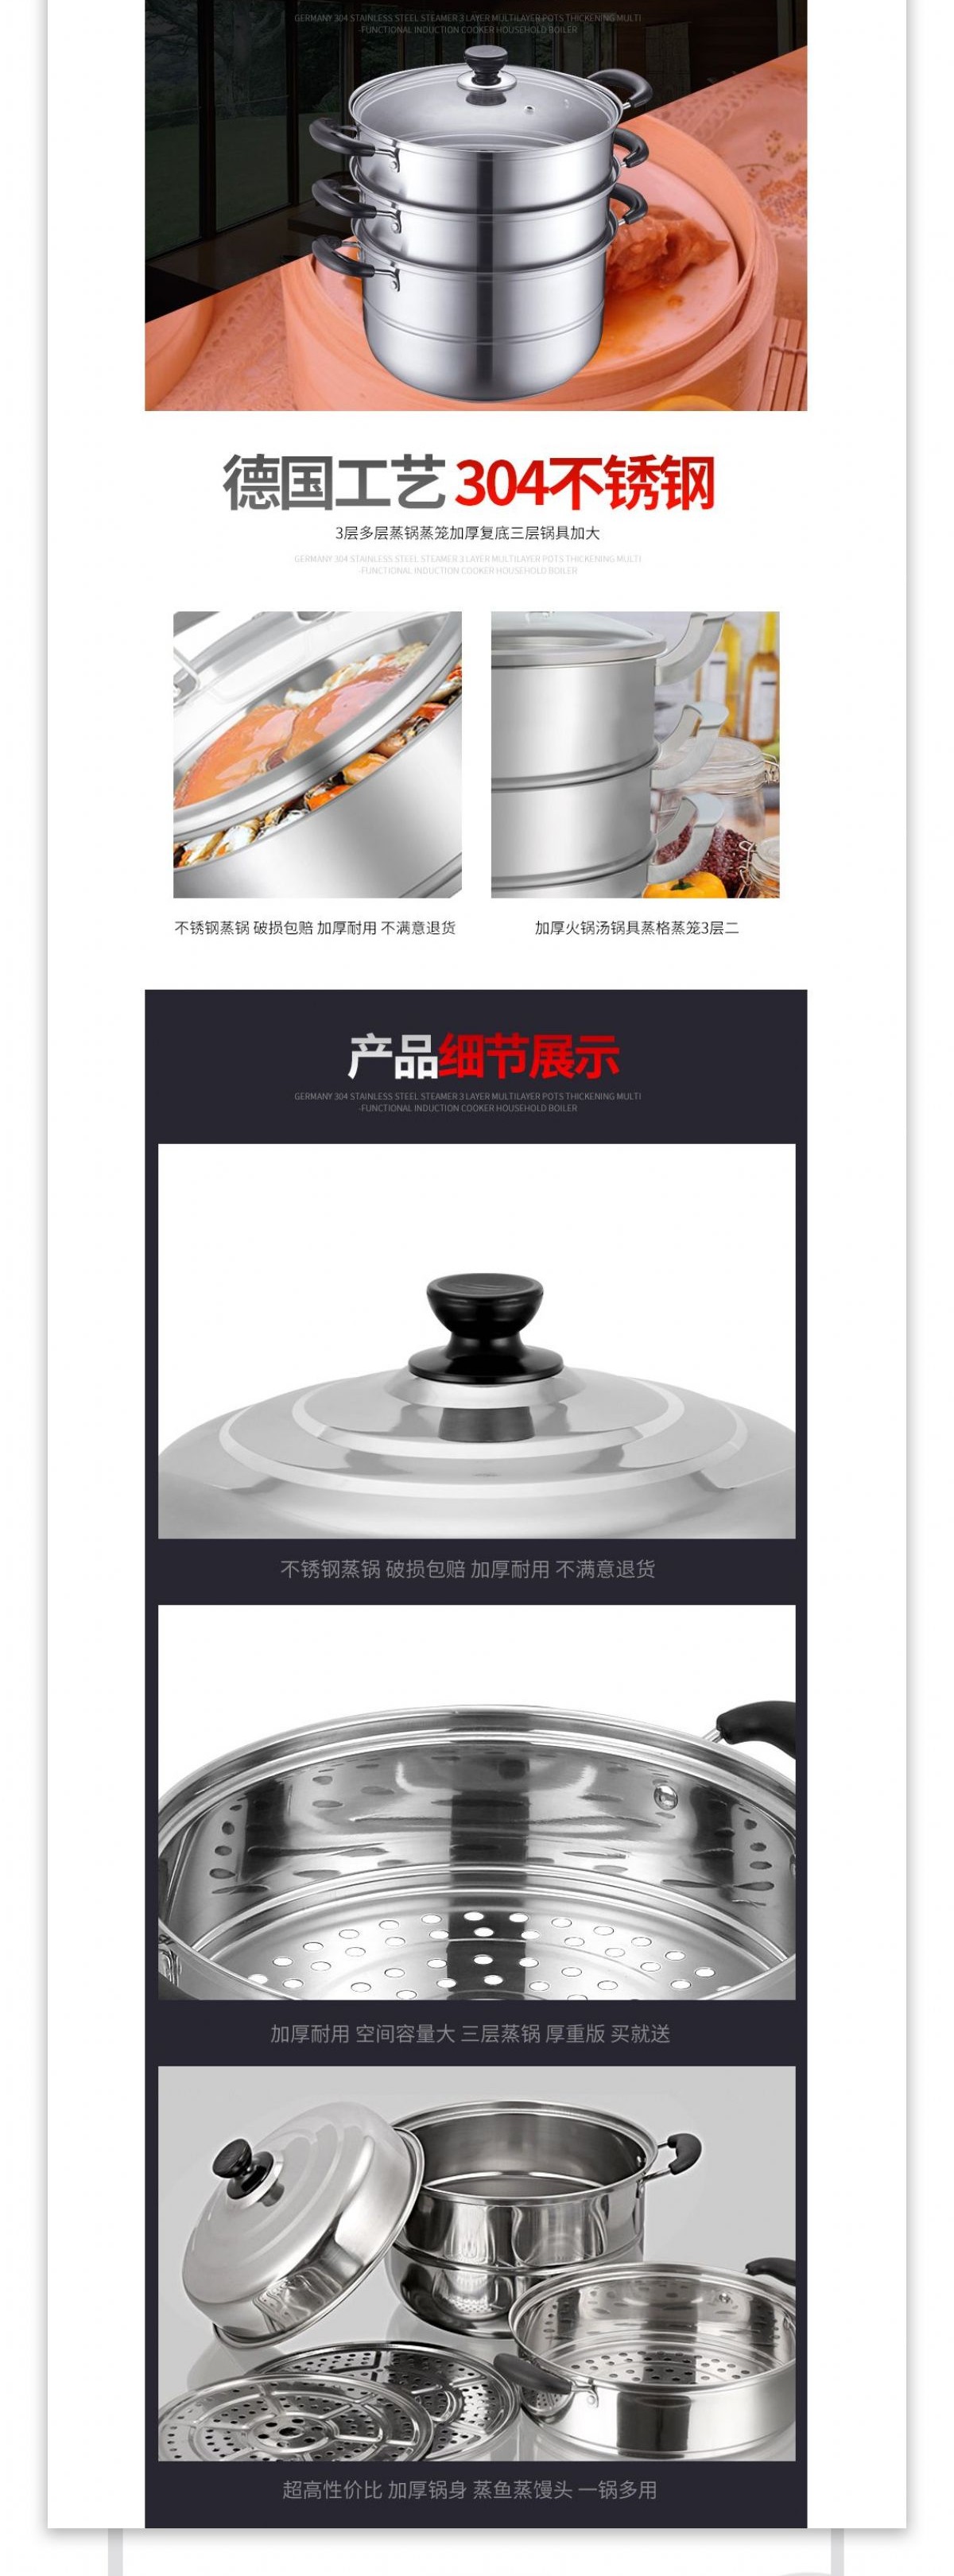 烹饪用具厨具详情页模板PSD